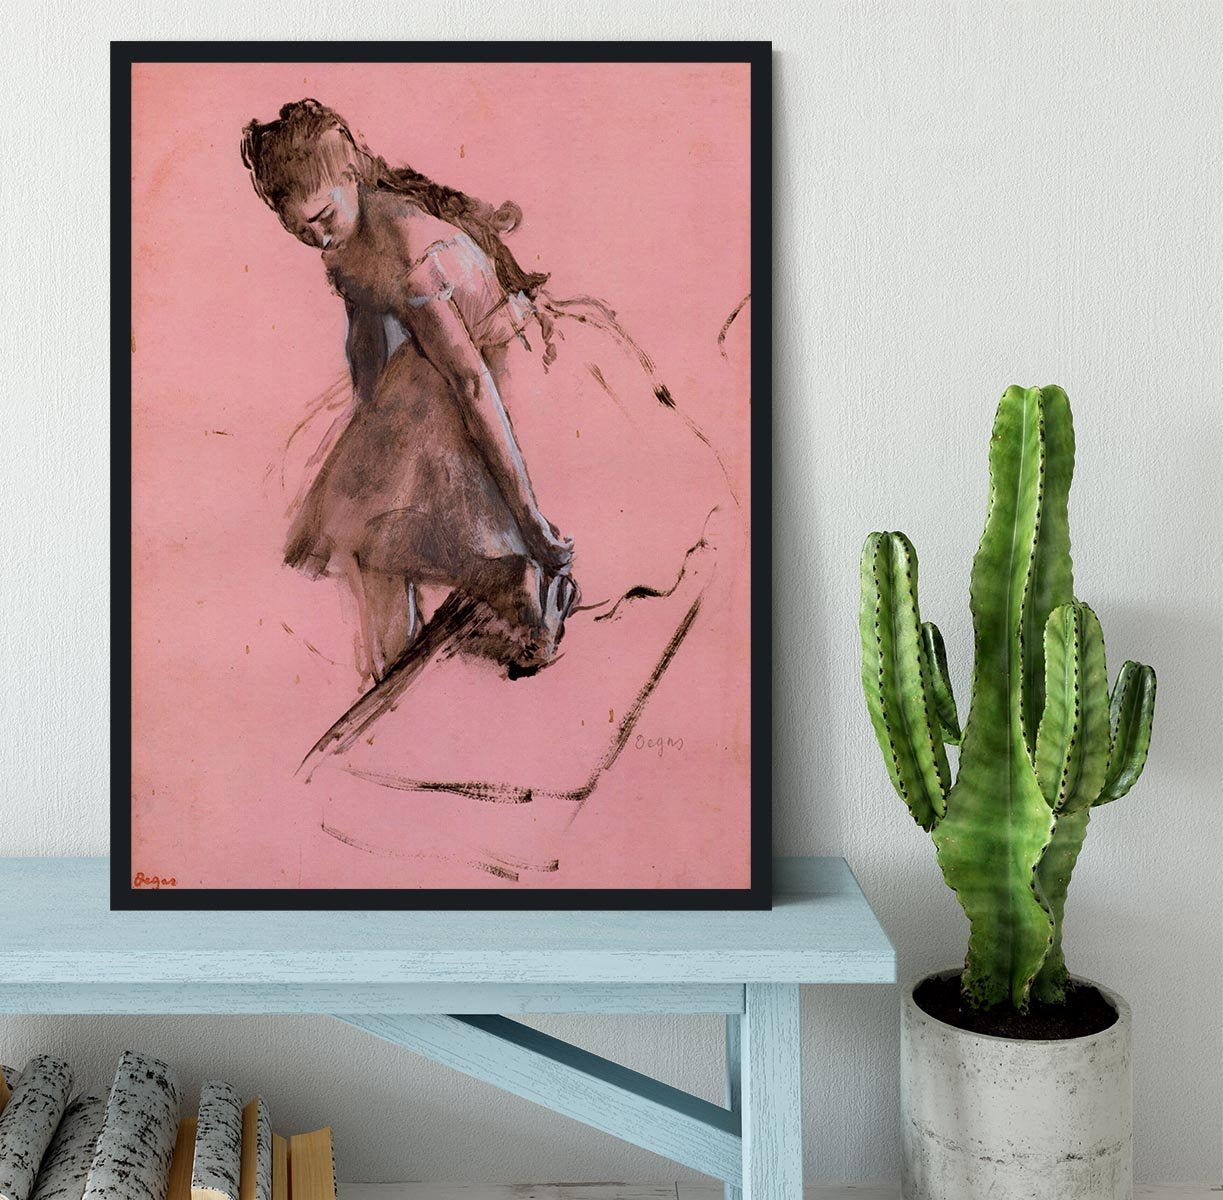 Dancer slipping on her shoe by Degas Framed Print - Canvas Art Rocks - 2